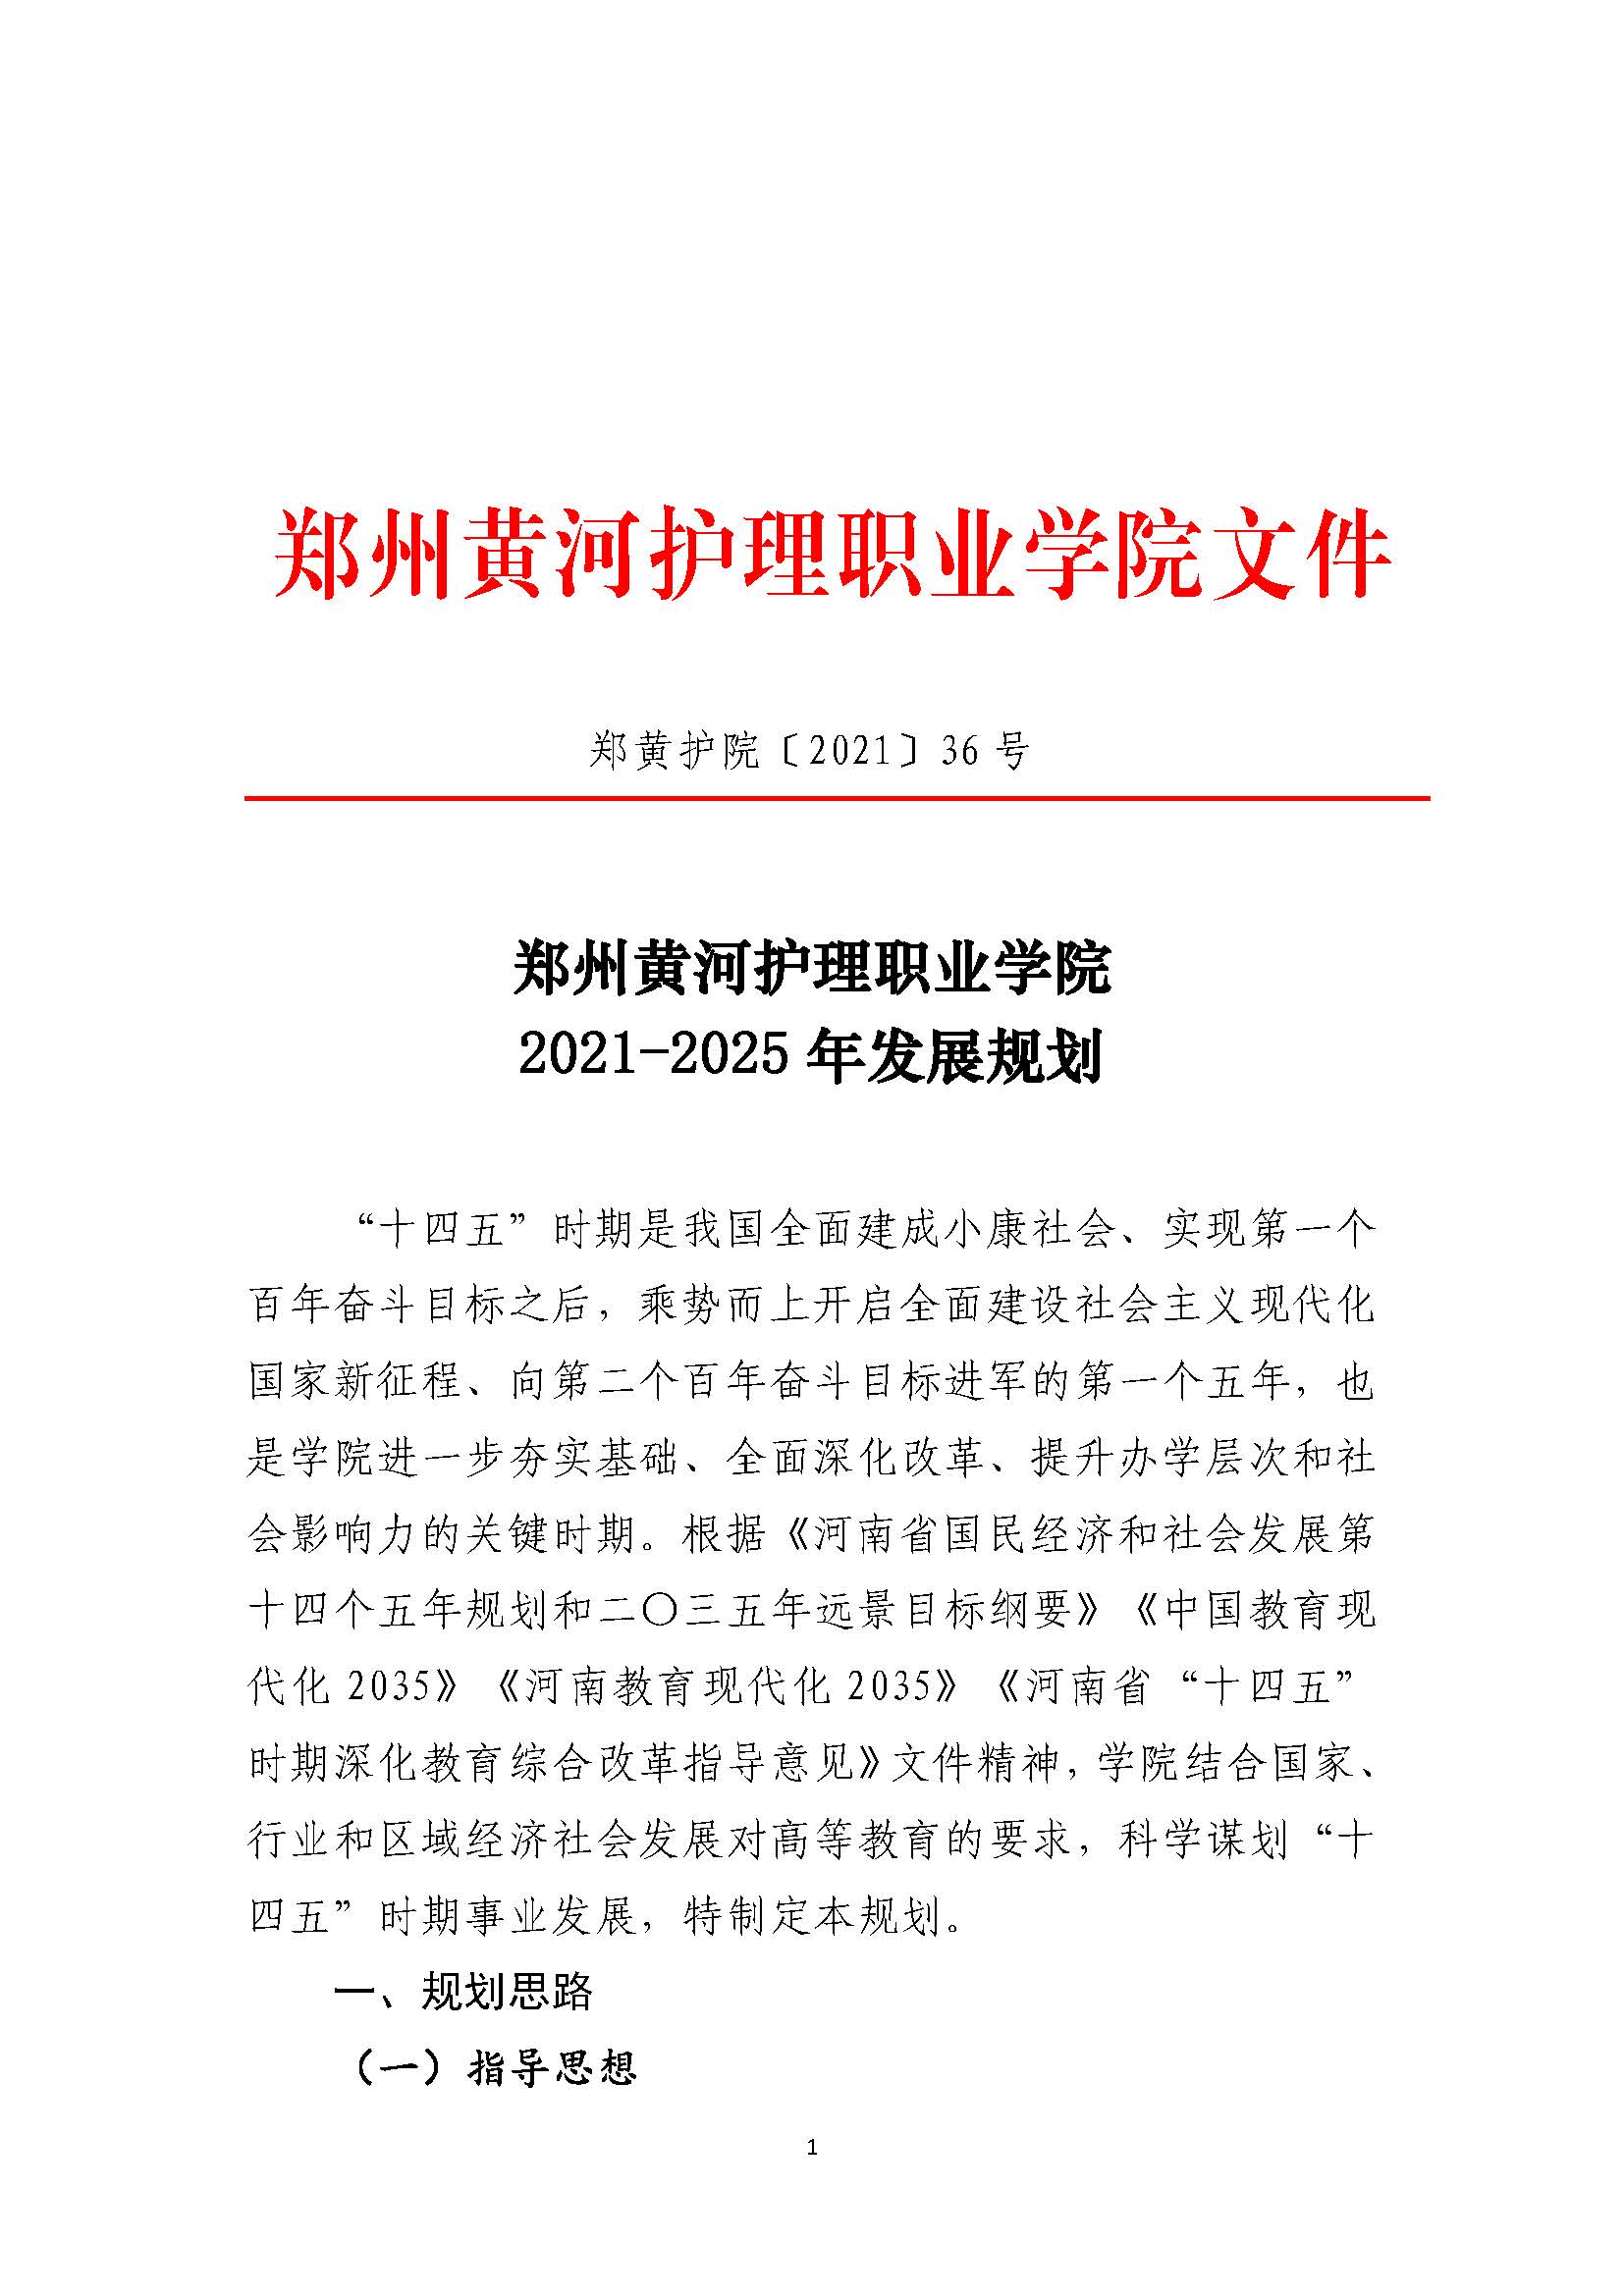 郑州黄河护理职业学院2021-2025年发展规划_页面_01.jpg